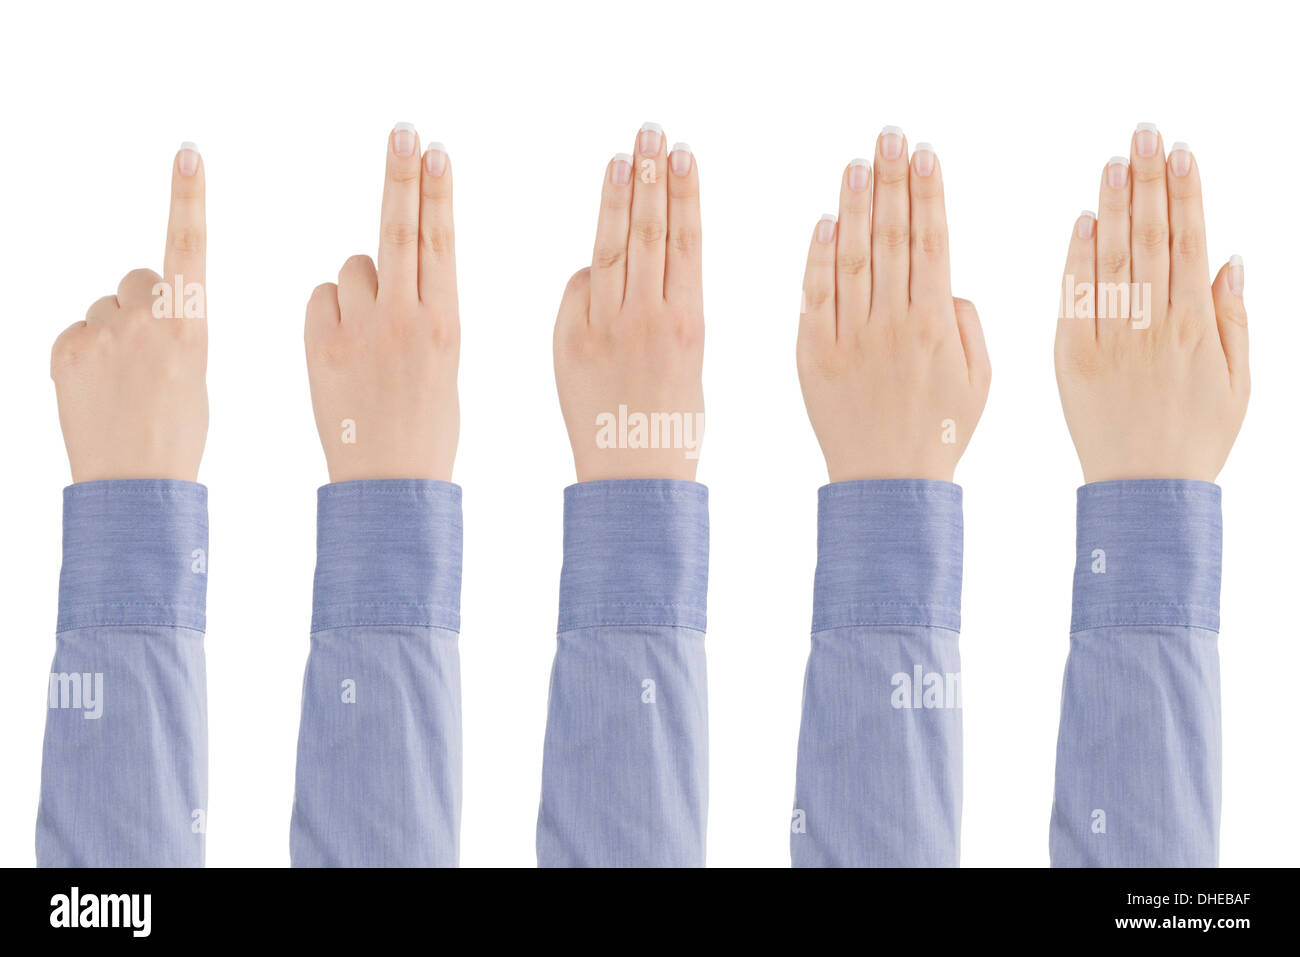 La main de femme montre avec les doigts d'un à cinq sur un fond blanc. Banque D'Images